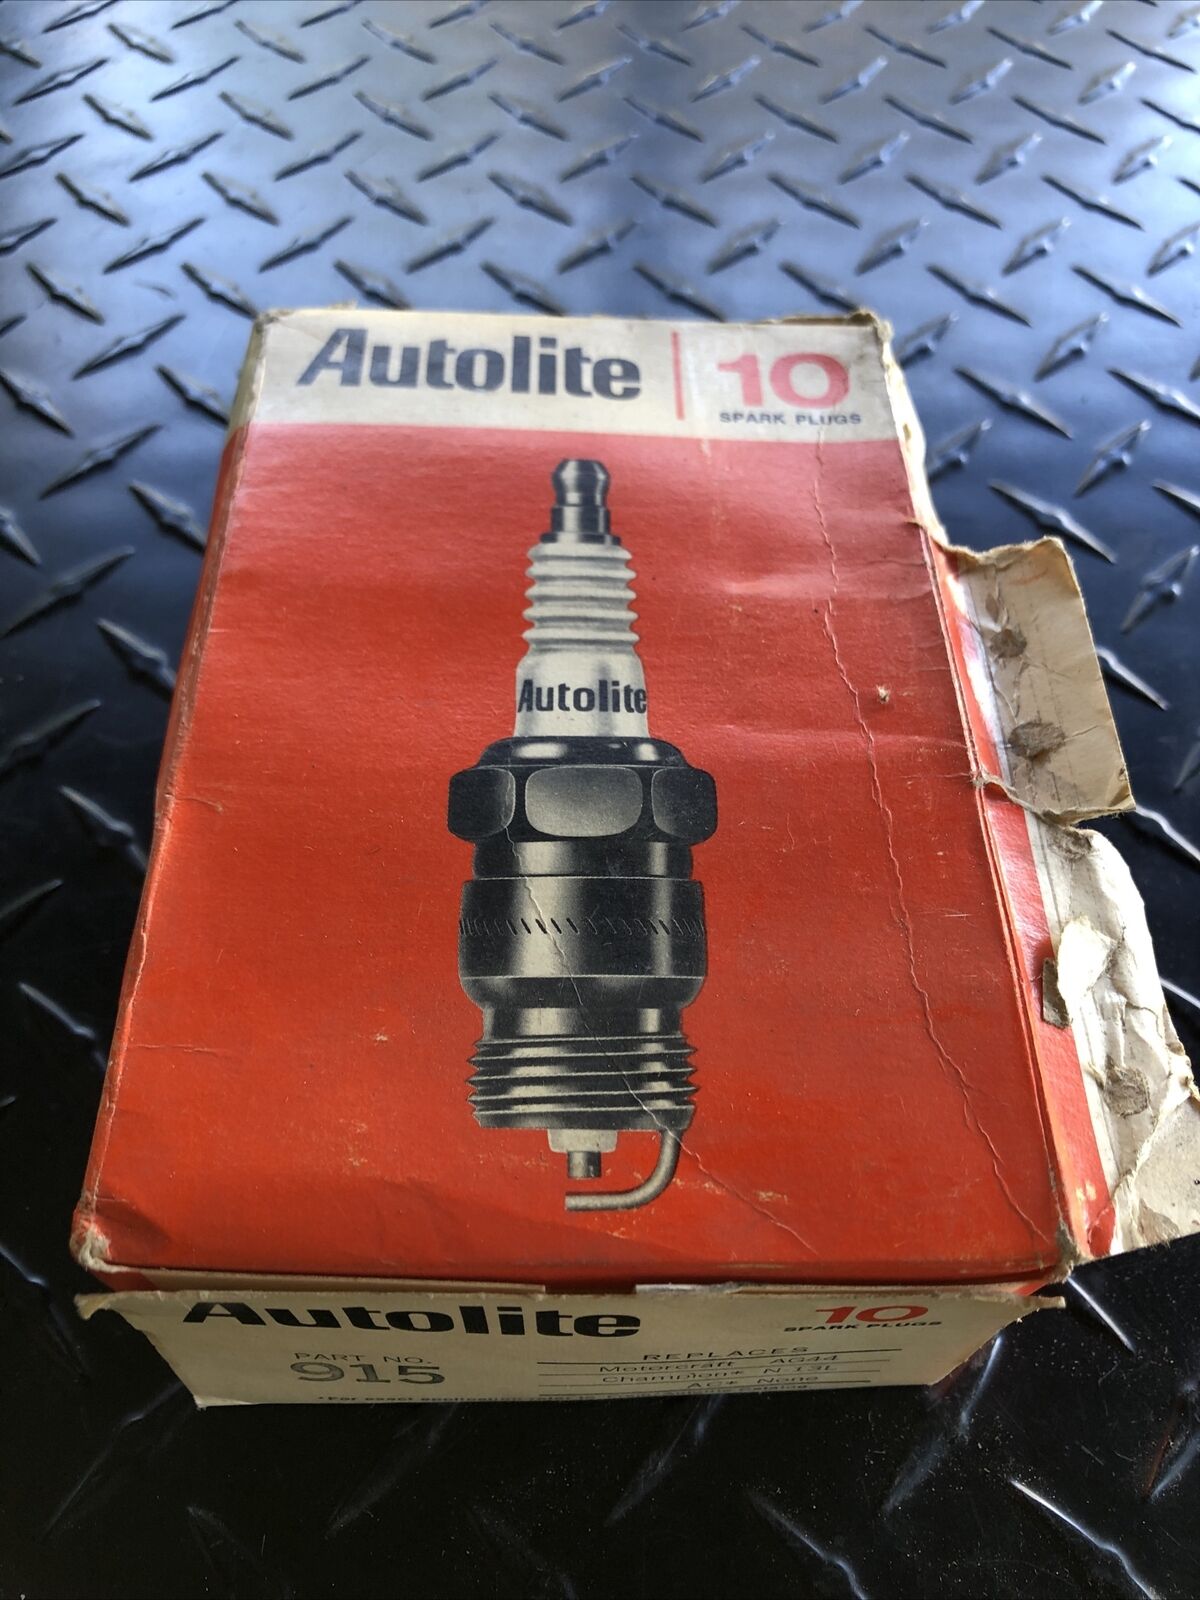 vintage Ford Autolite spark plugs number 915 box of 10